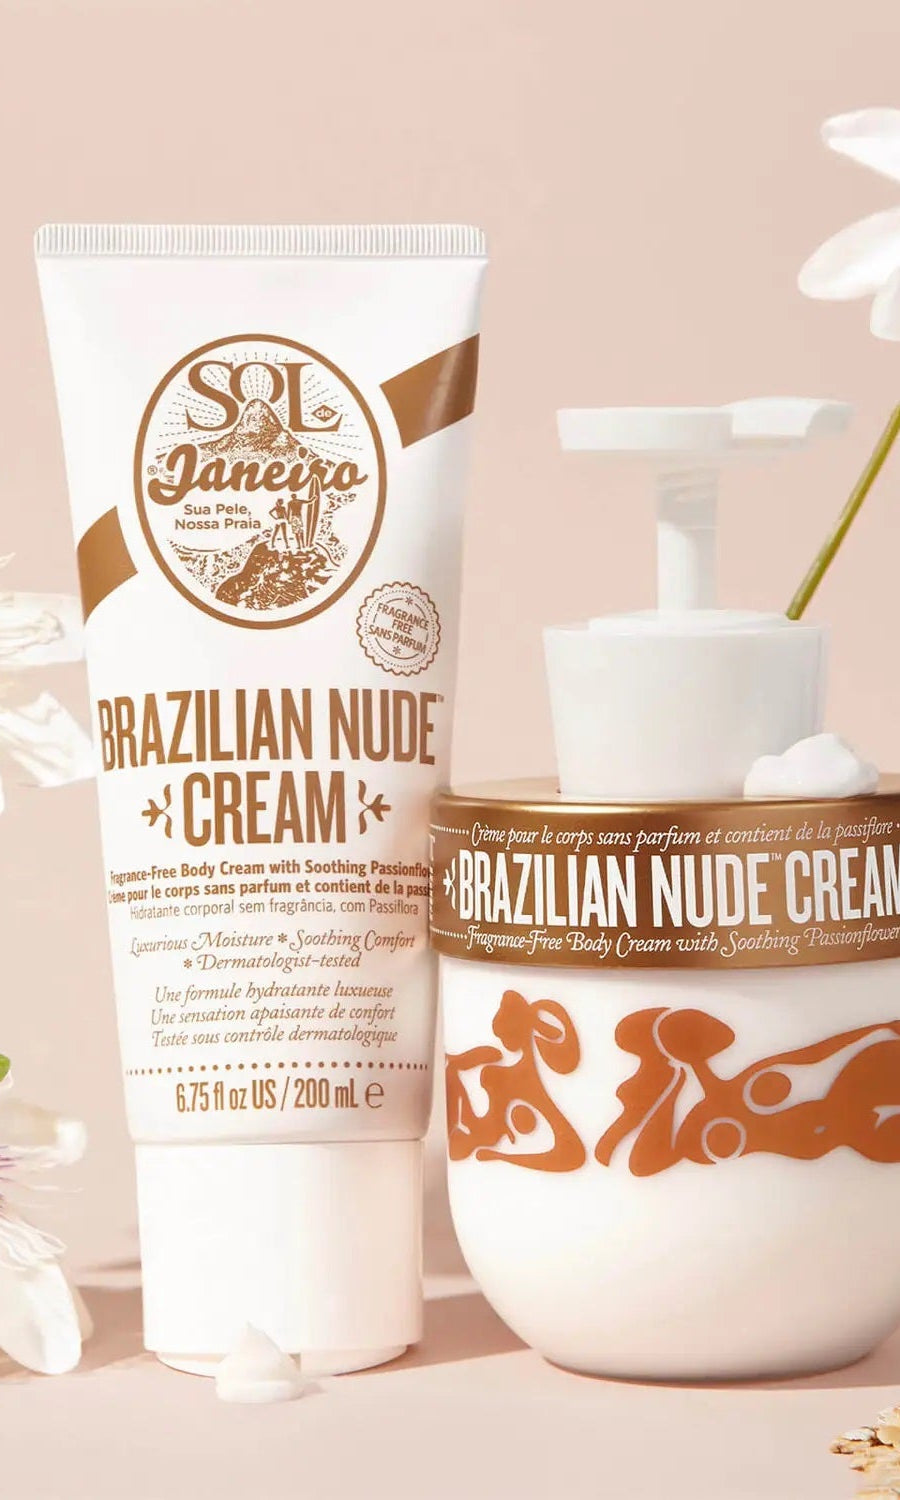 Sol de Janeiro Brazilian Nude Fragrance-Free Body Cream 200ml Grace Beauty